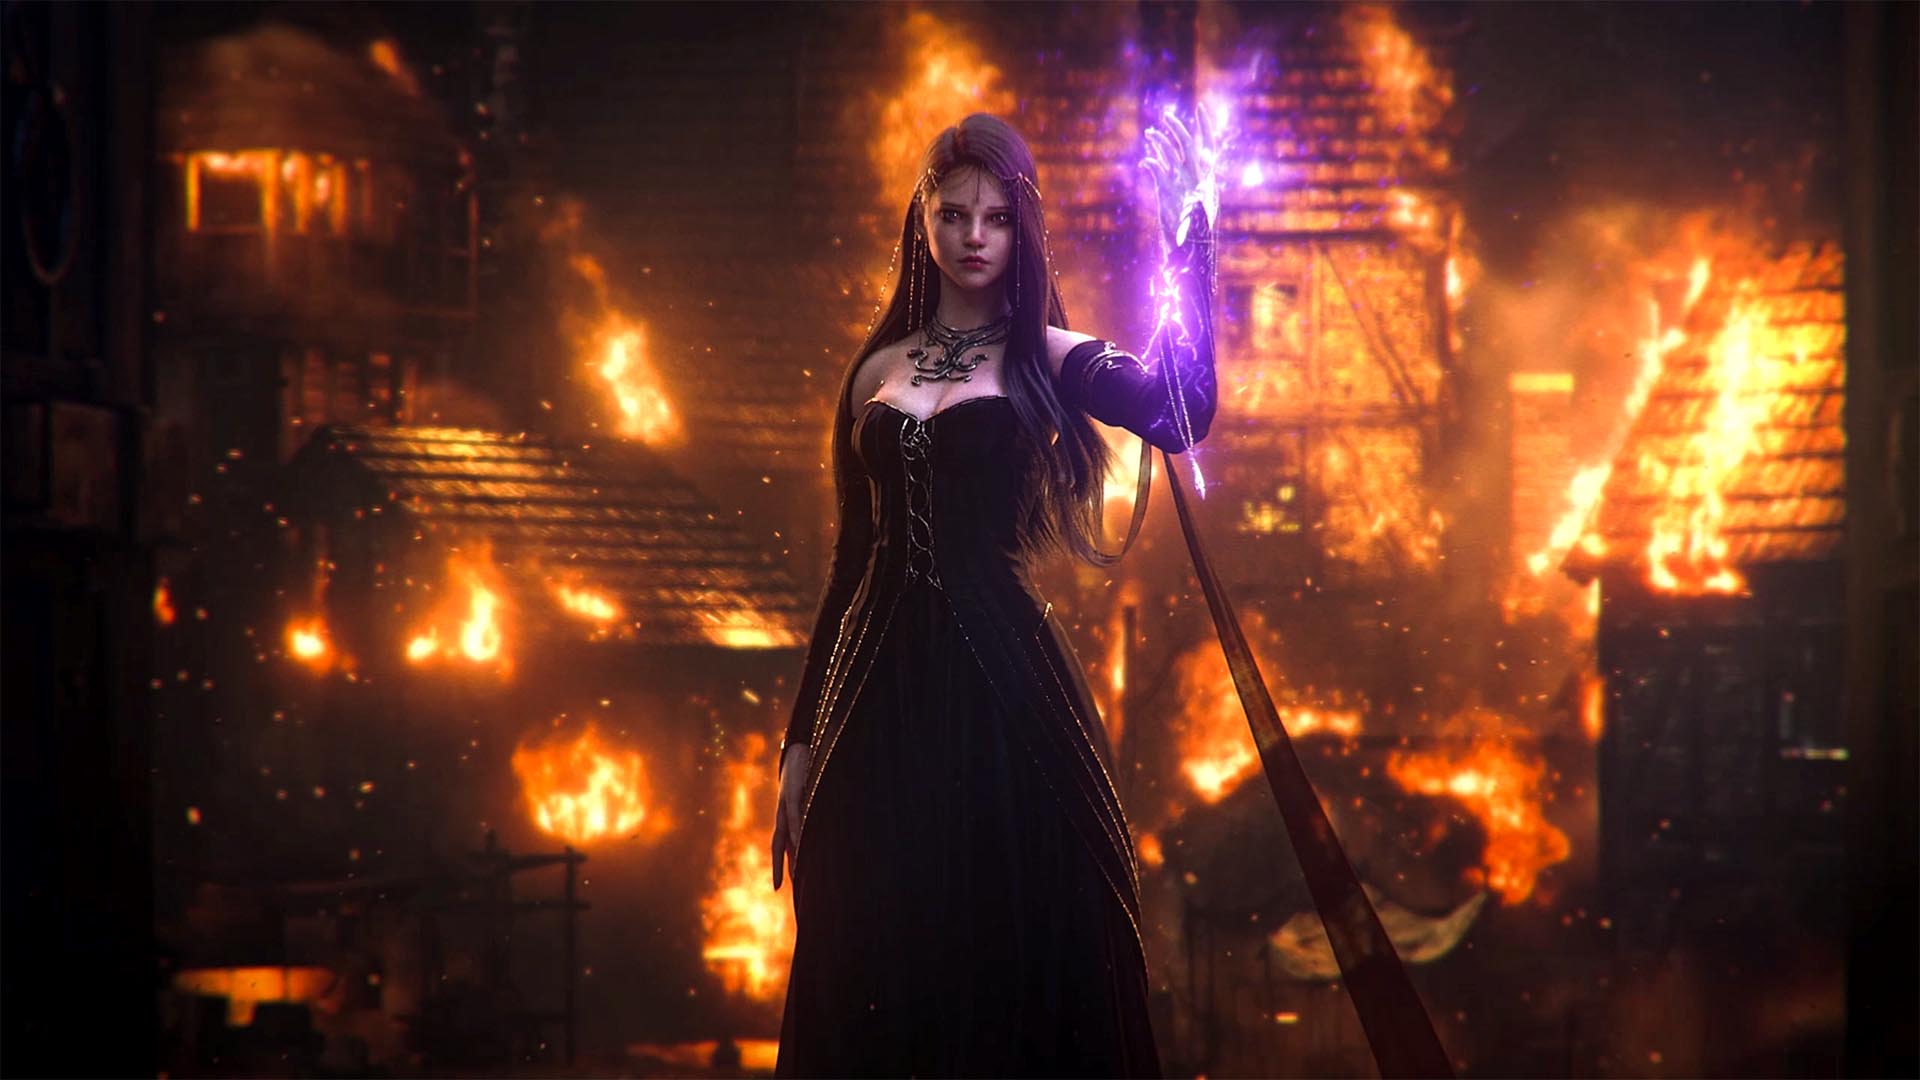 Calantia está de pie con un vestido negro, cabello largo y oscuro, con brillo morado saliendo de sus manos y una ciudad quemándose a sus espaldas.